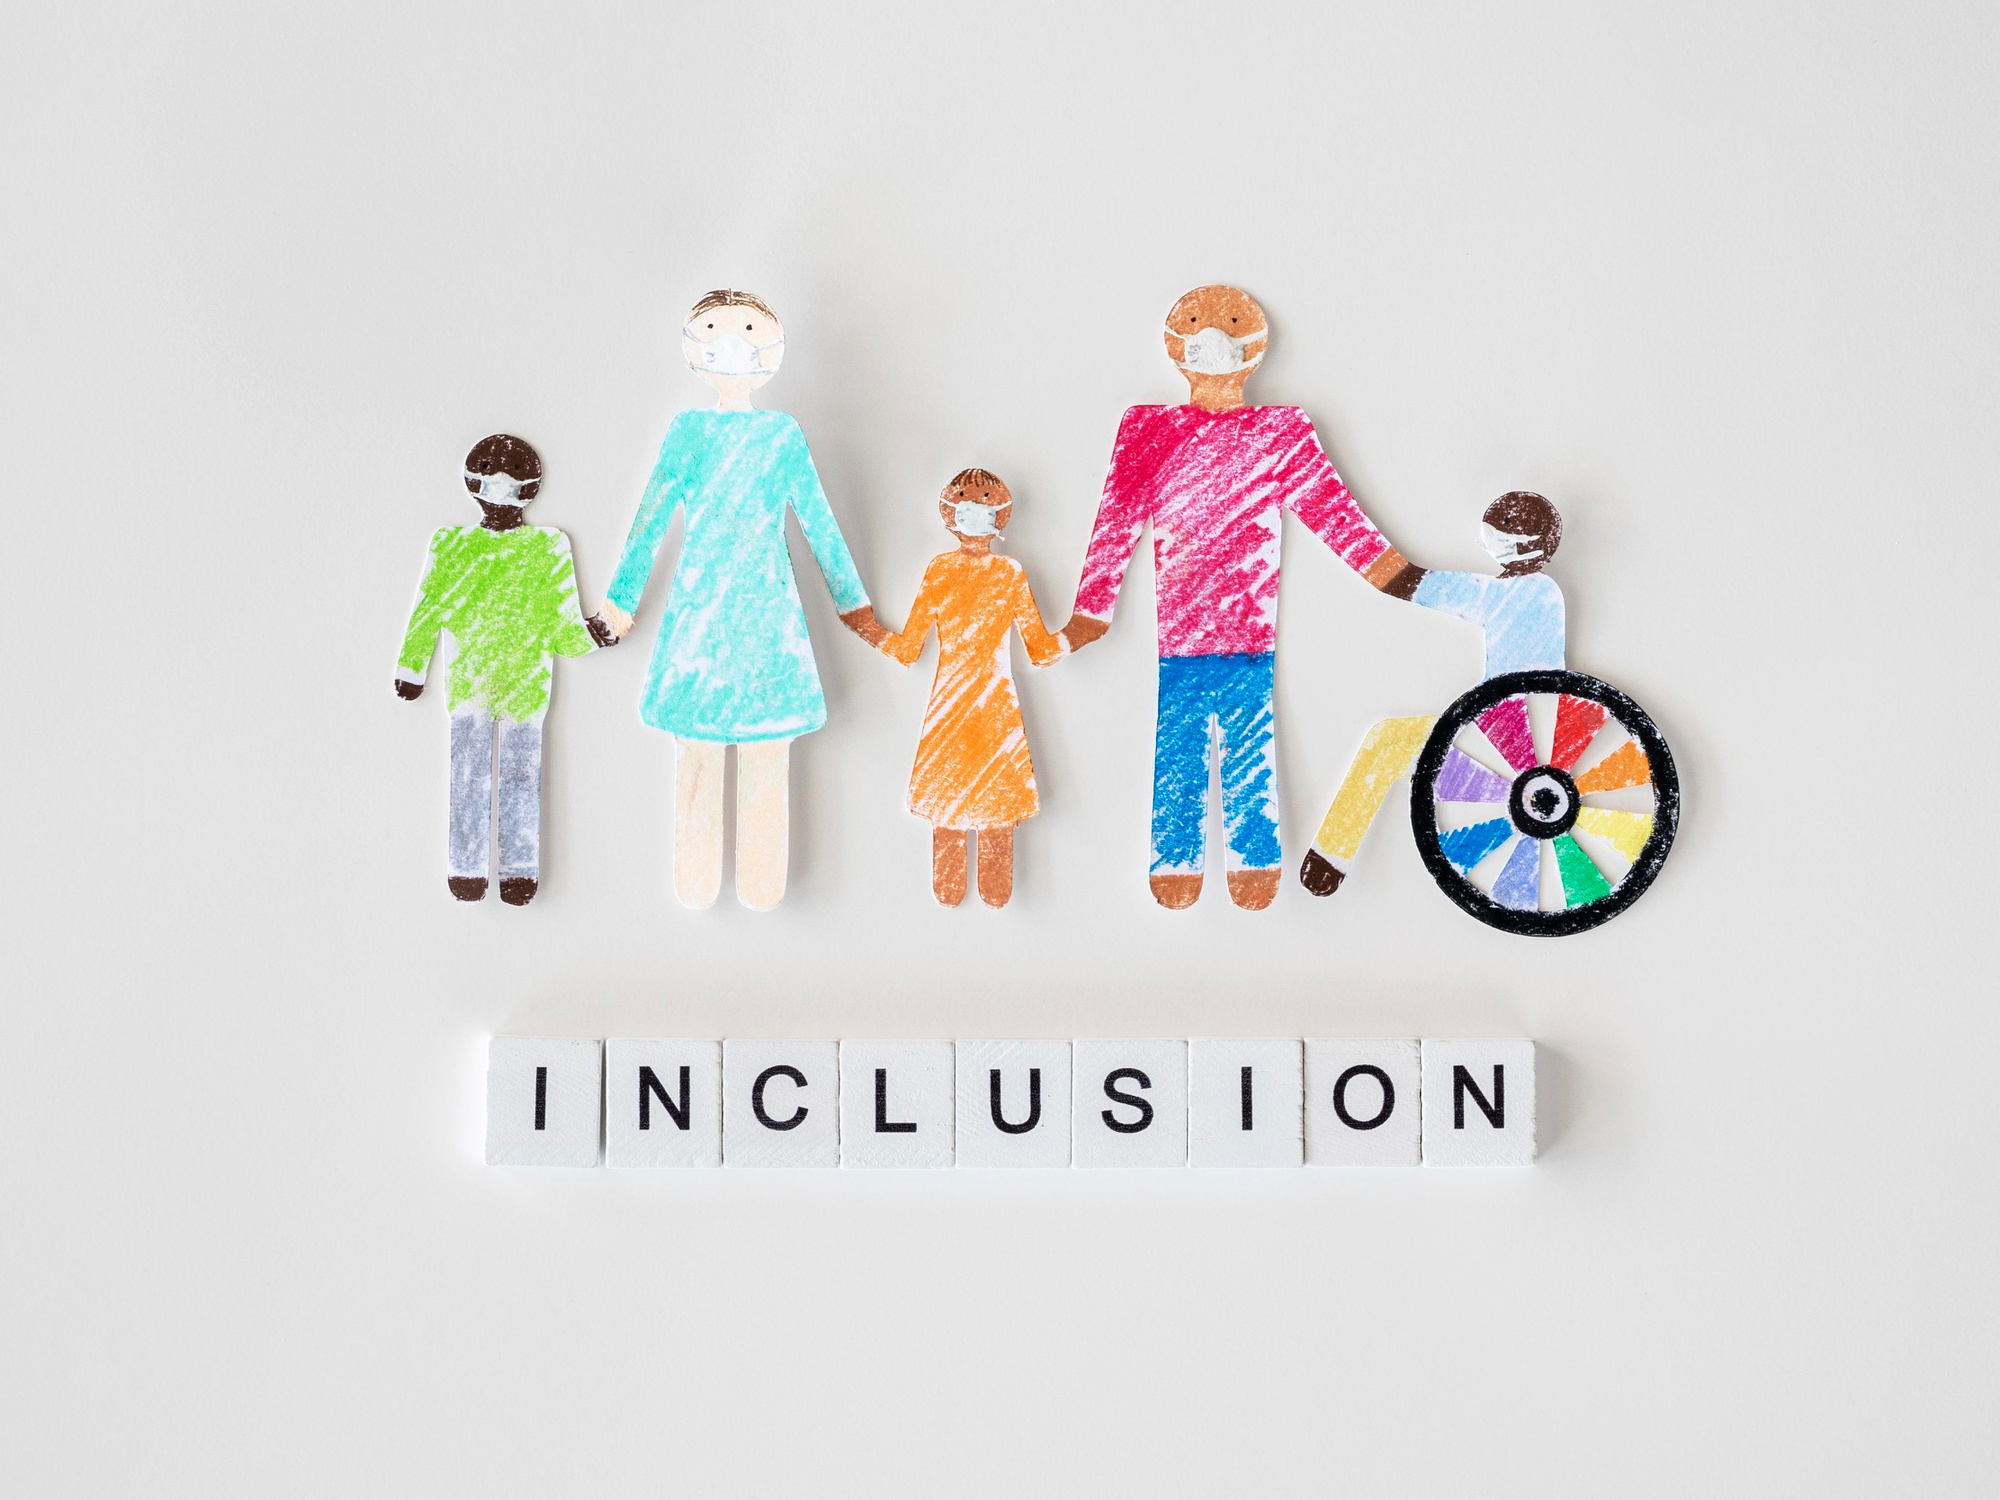 familia-discapacidad-persona-concepto-inclusion-papel-recortado